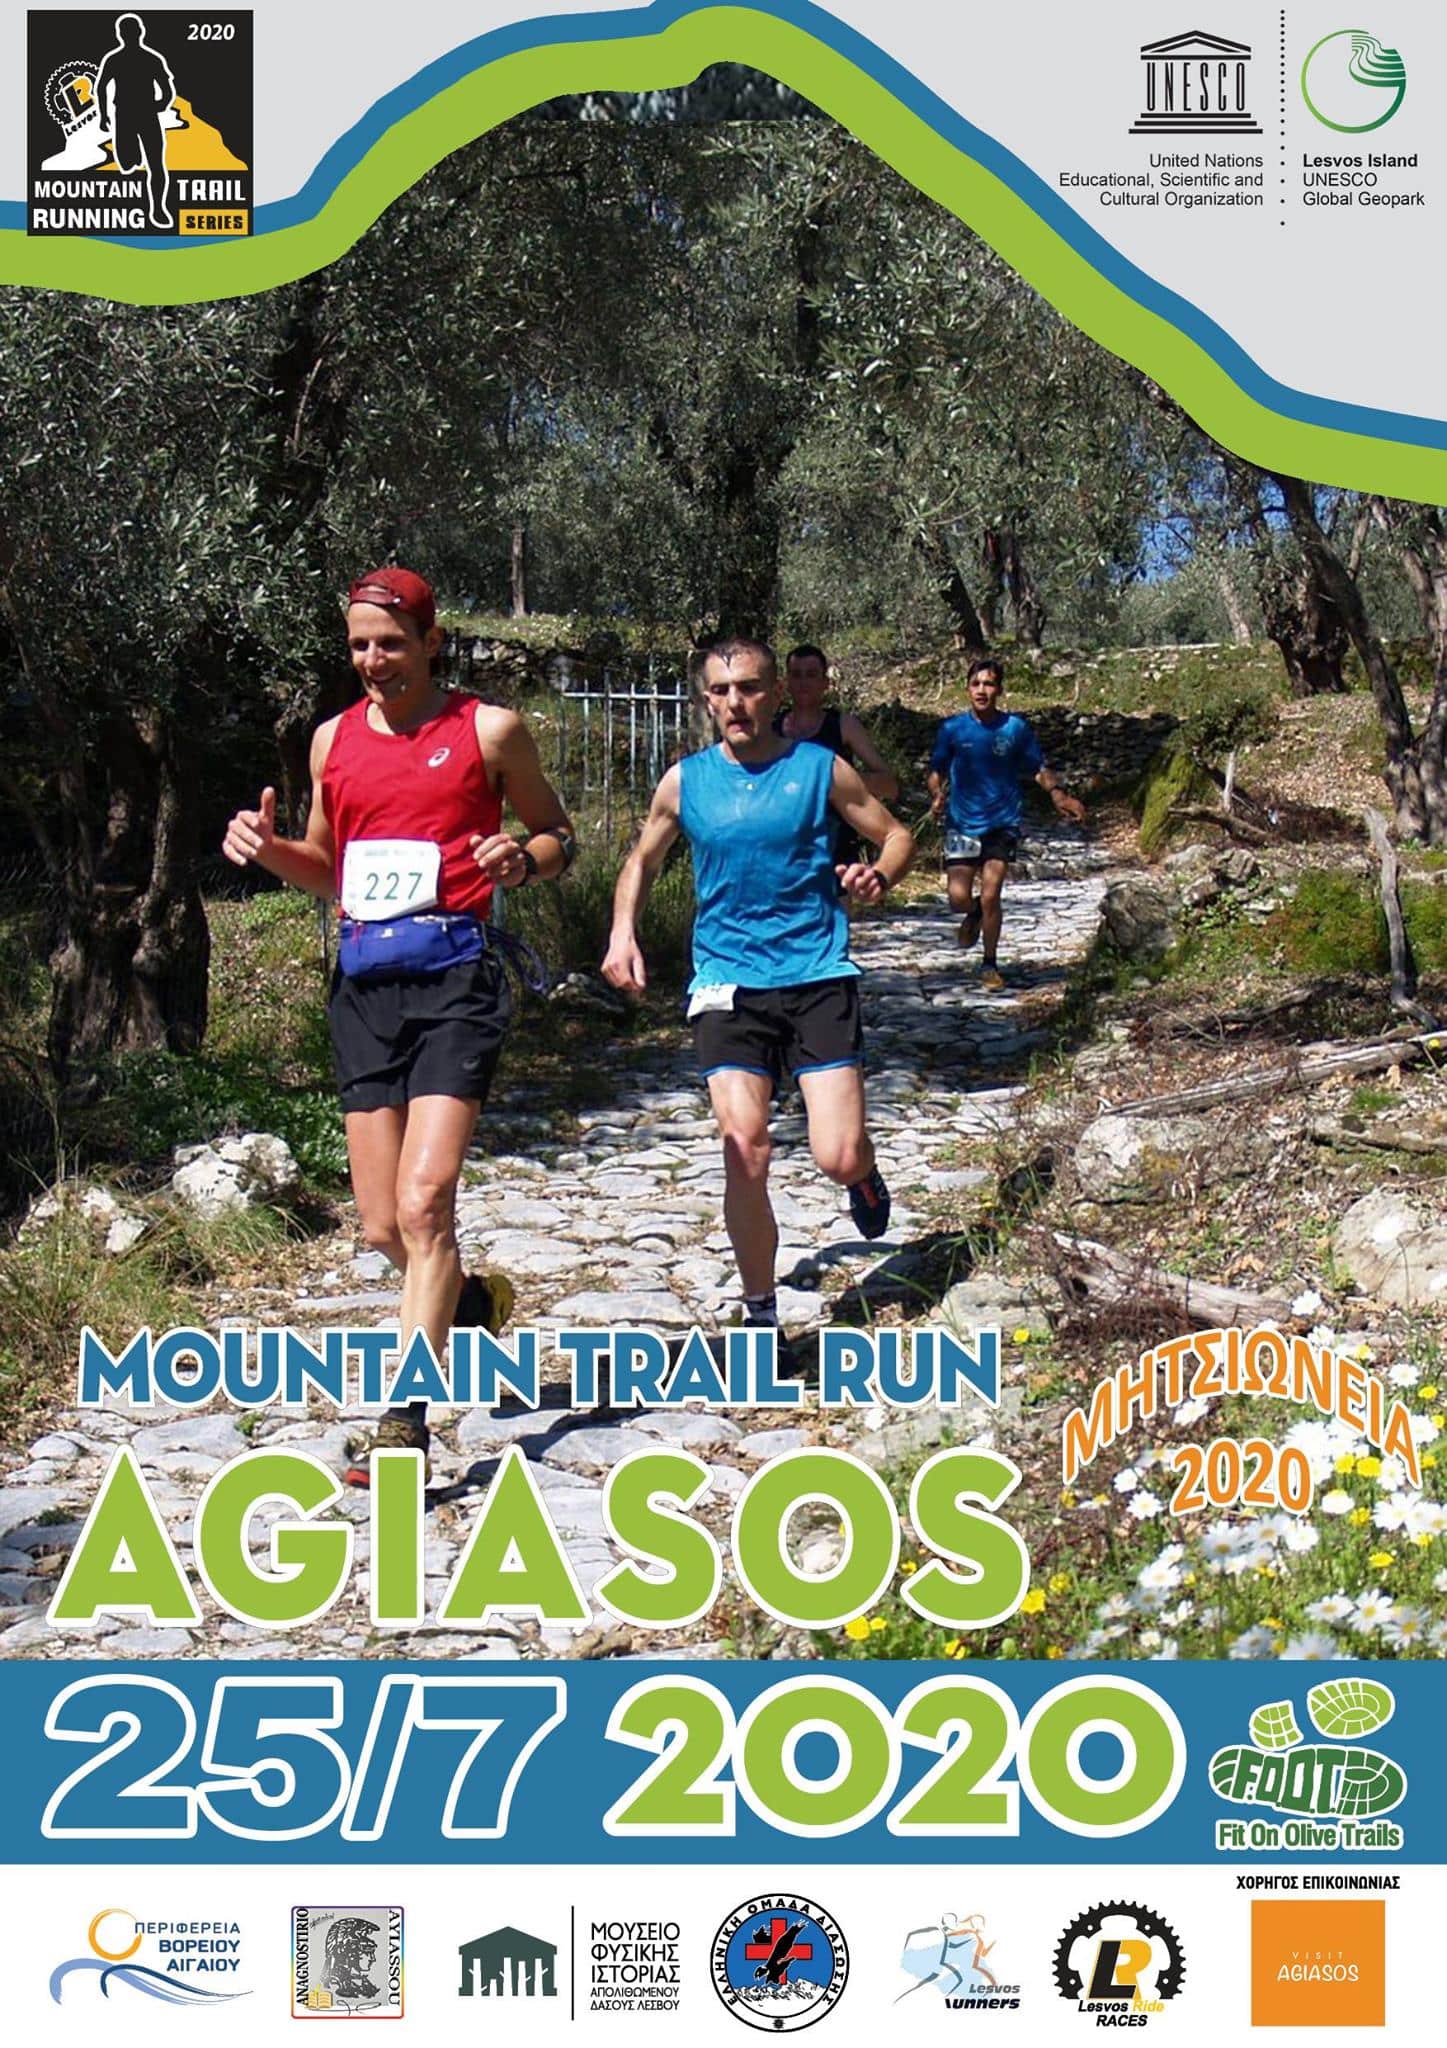 mitsoneia 2020 - Agiasos Trail